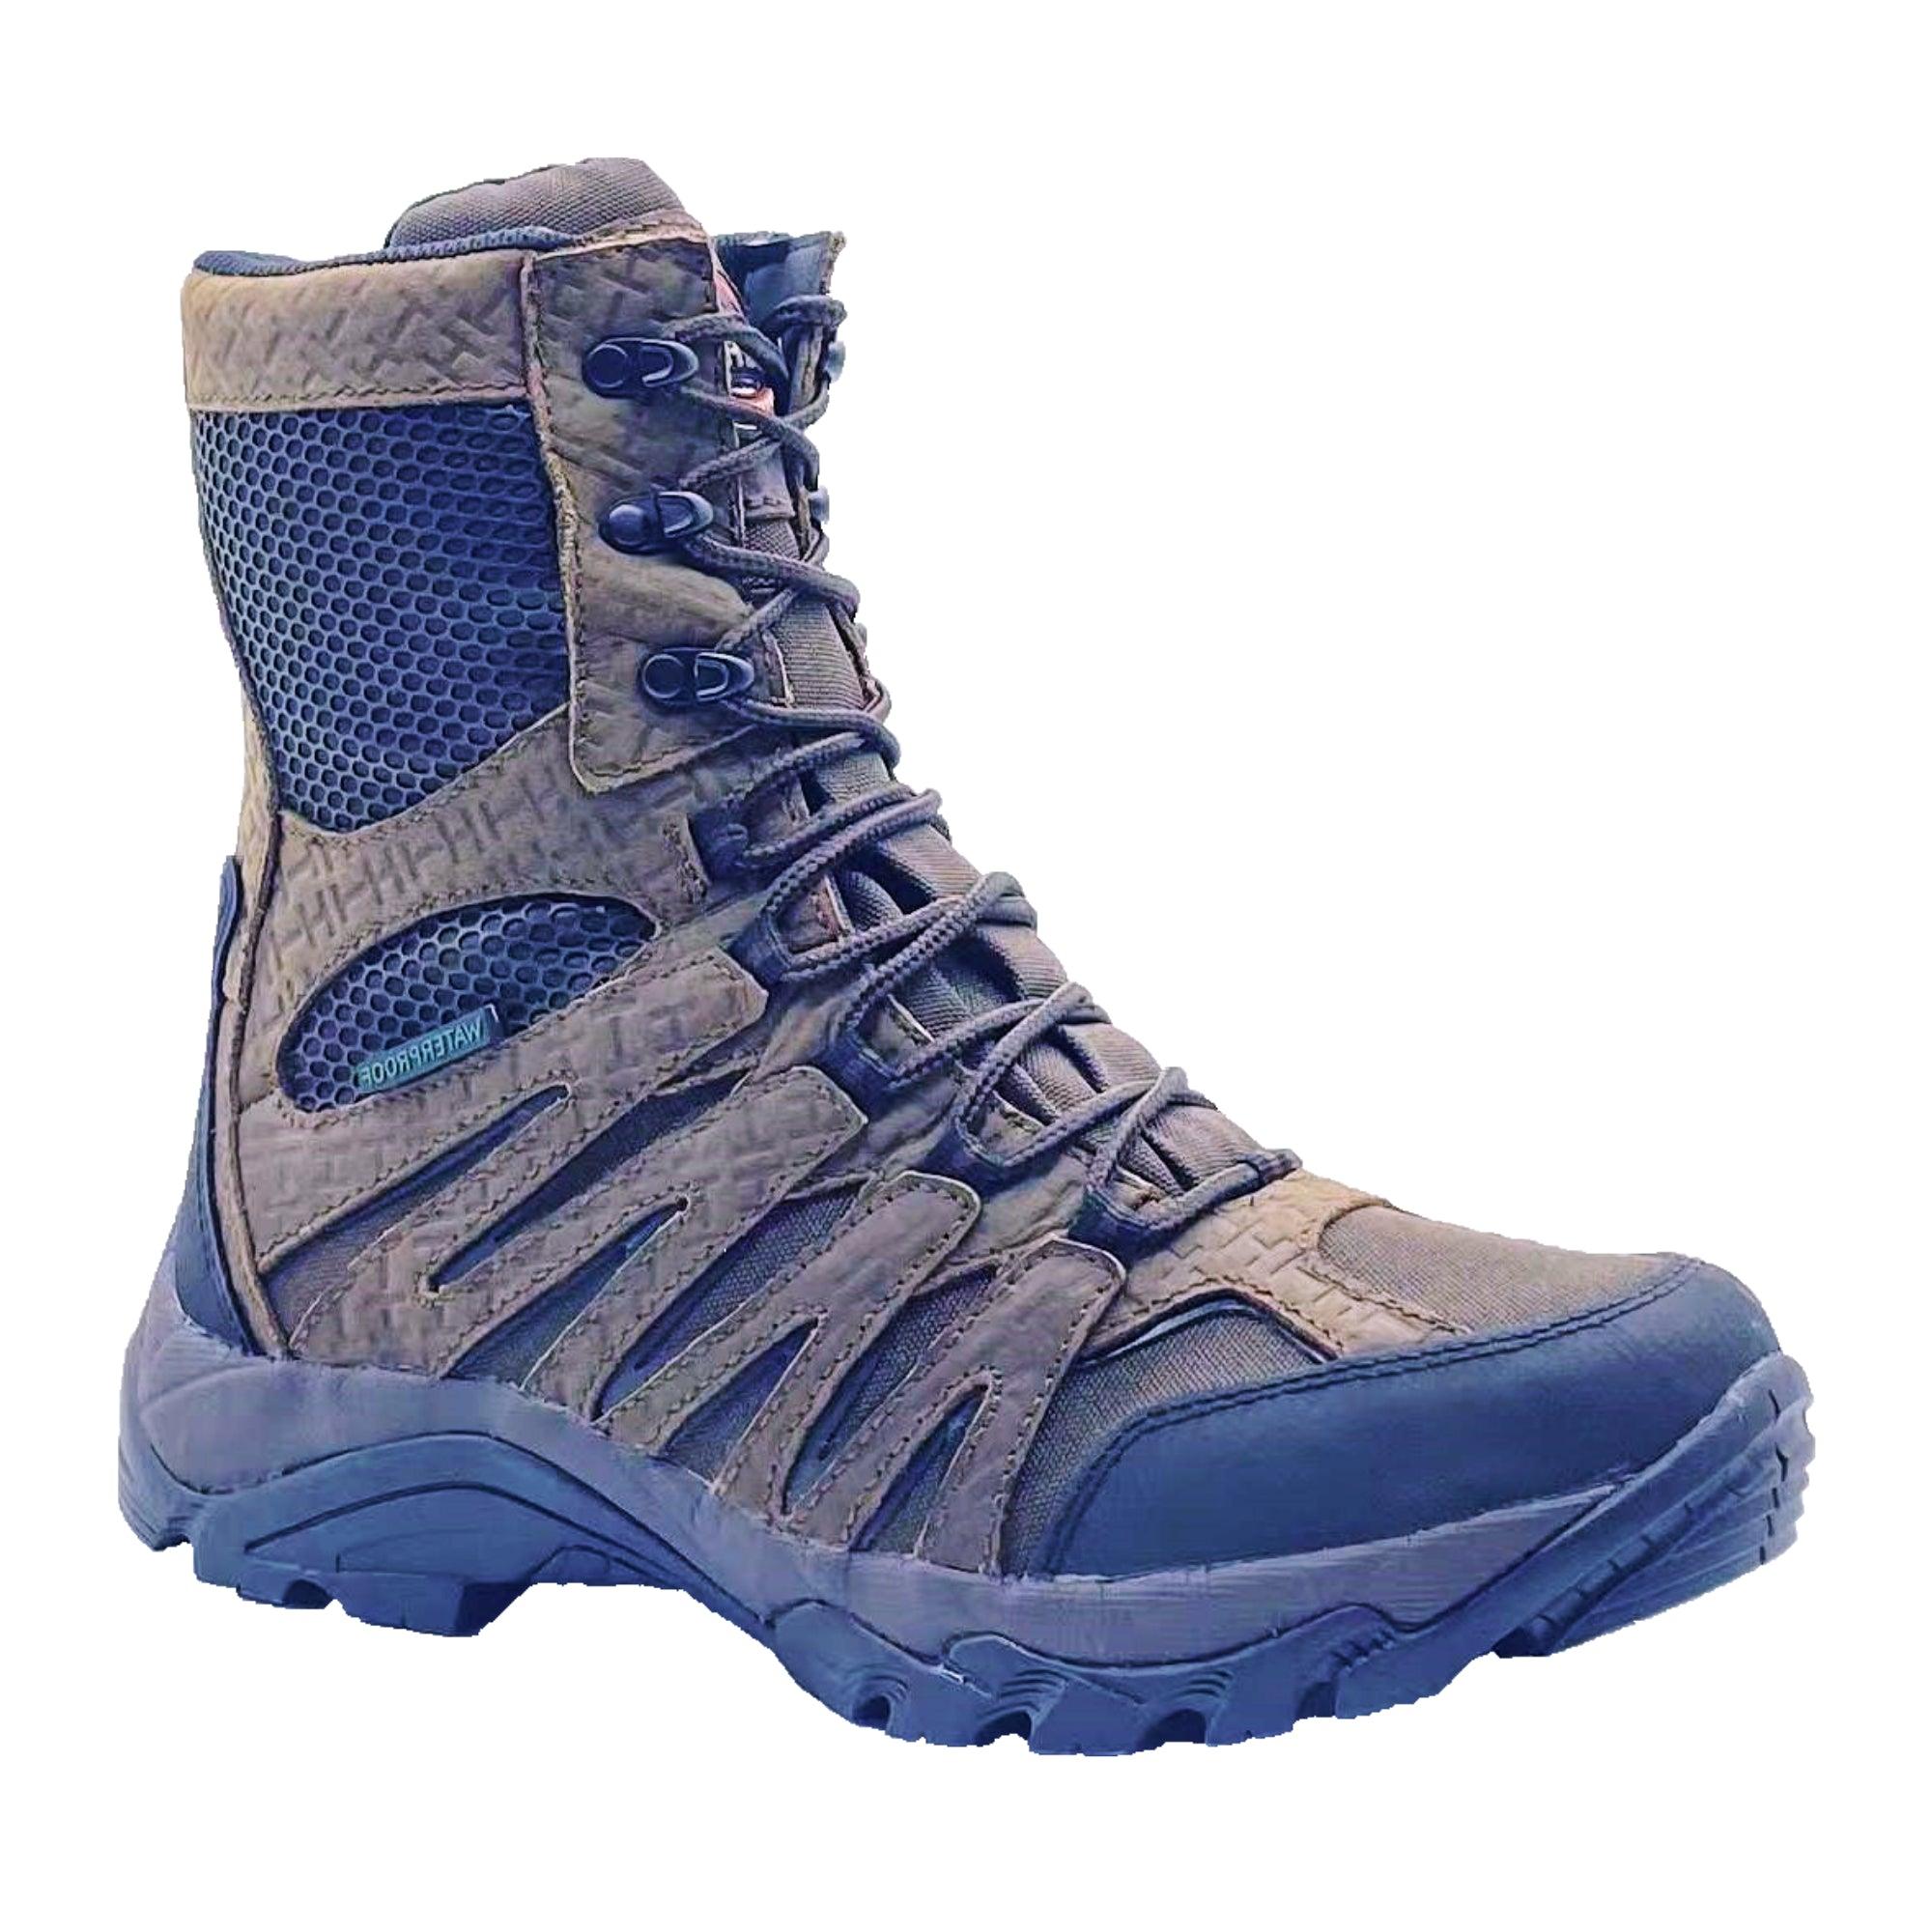 AdTec Men's 8" Waterproof Side Zipper Hunting Boot Brown - Flyclothing LLC